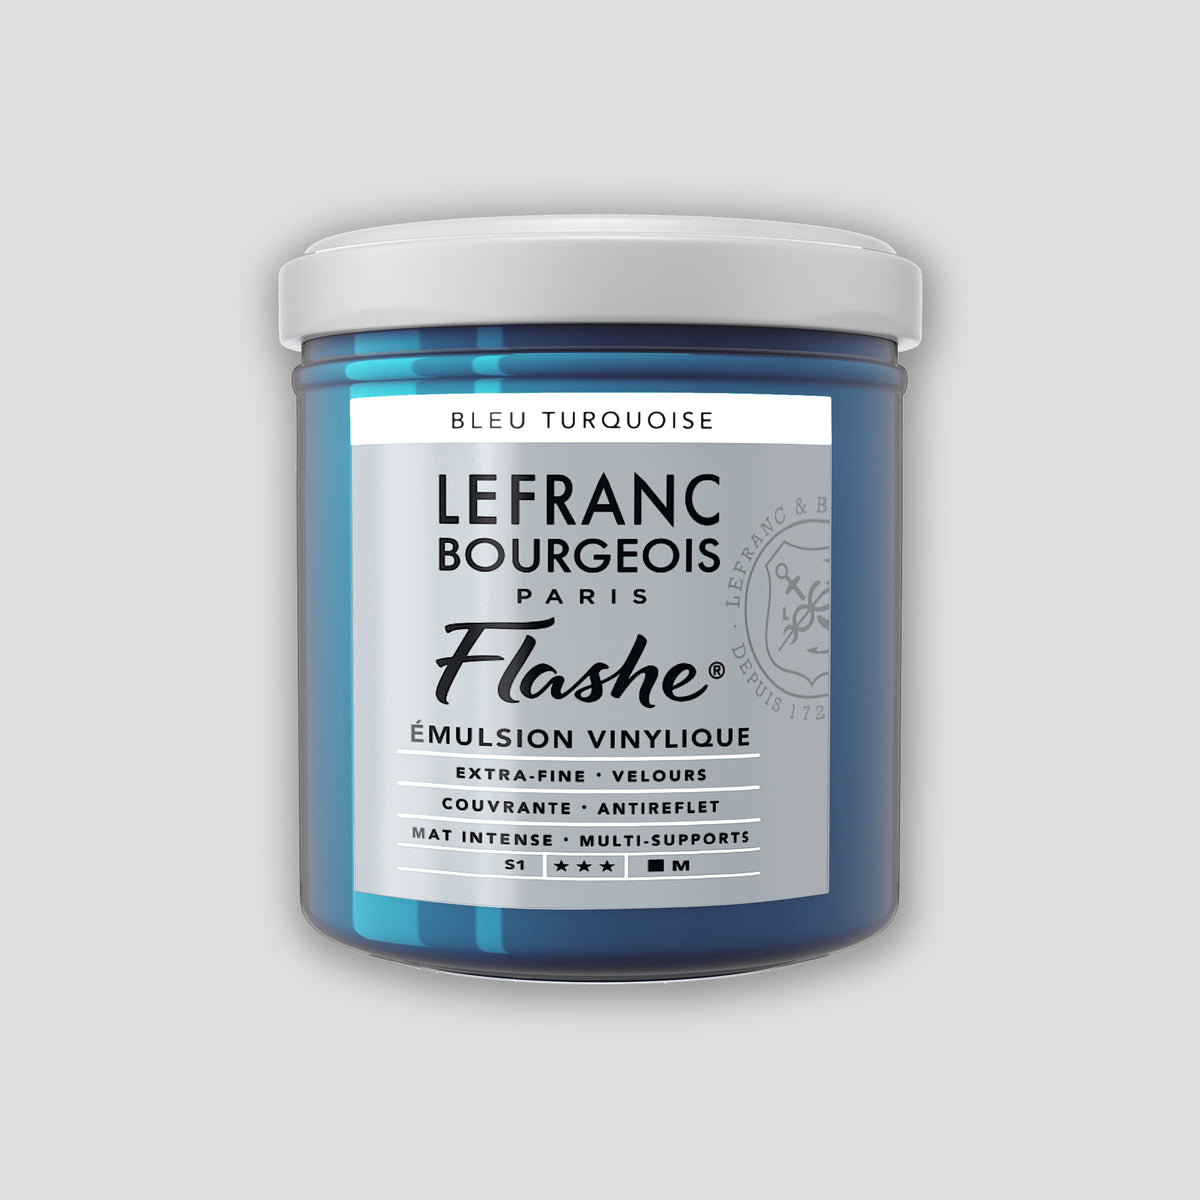 Lefranc Bourgeois Flashe Acrylic Paint 125ml Turquoise Blue